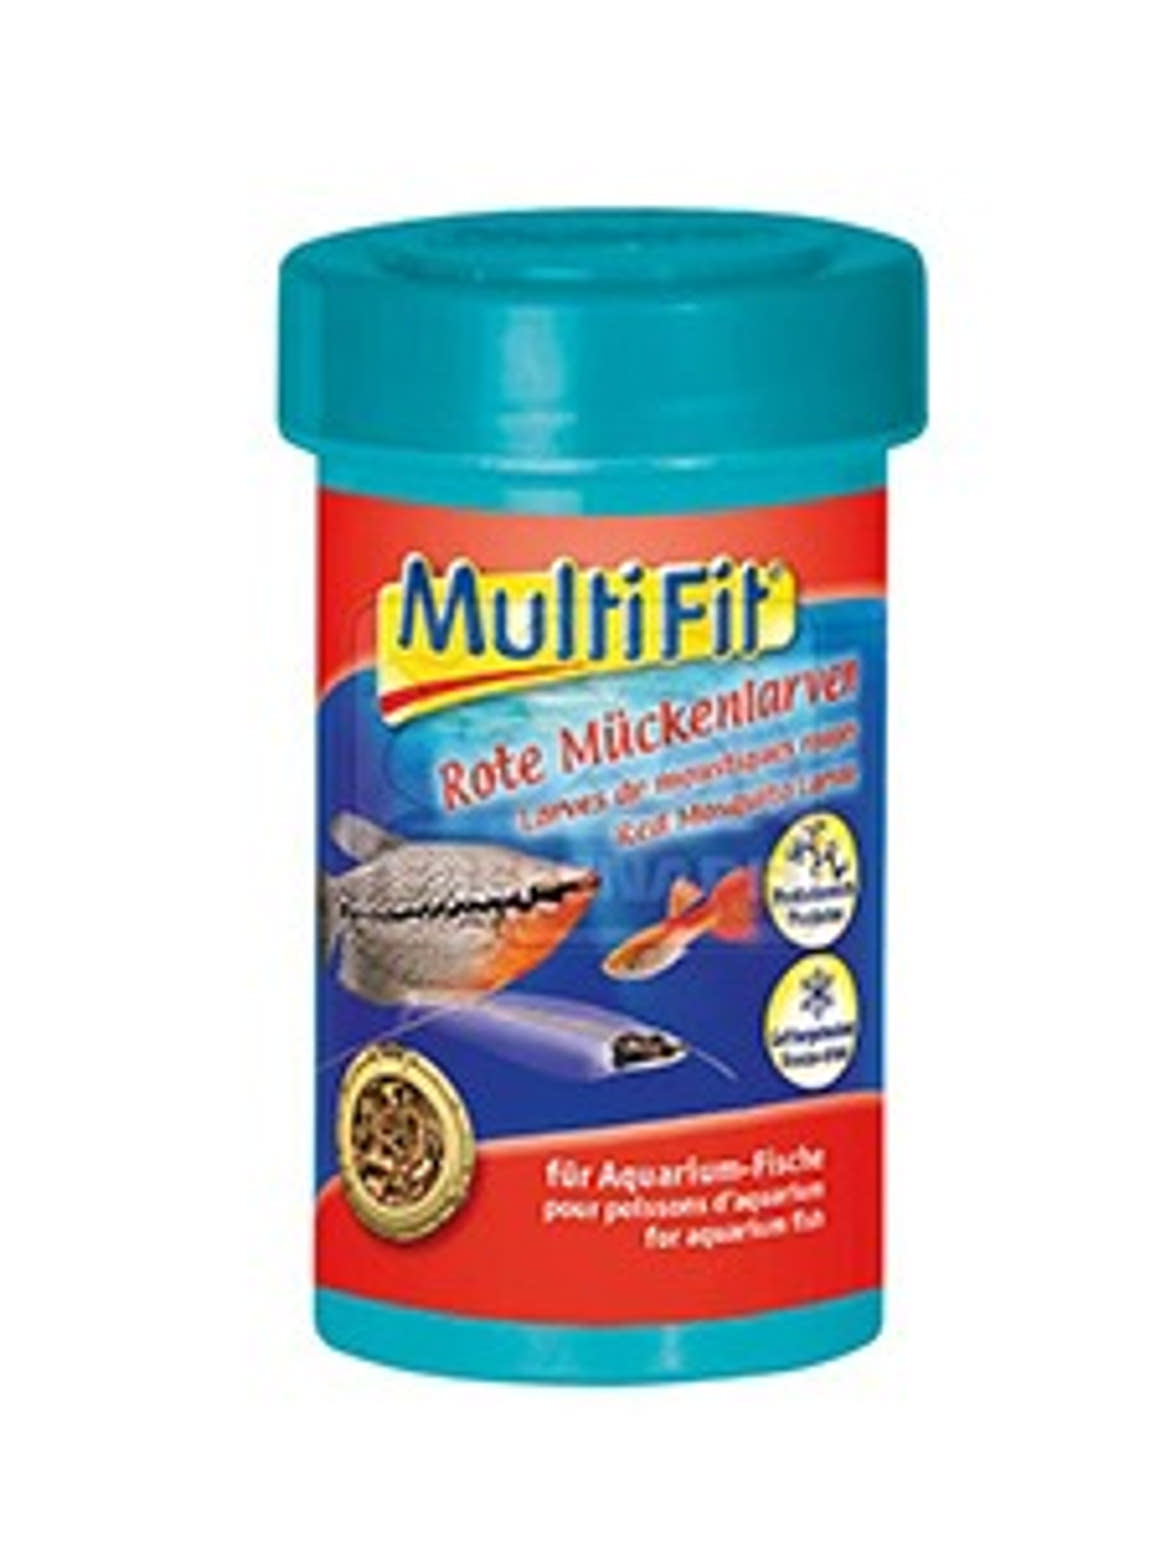 MultiFit eledel halaknak vörösszúnyoglárva